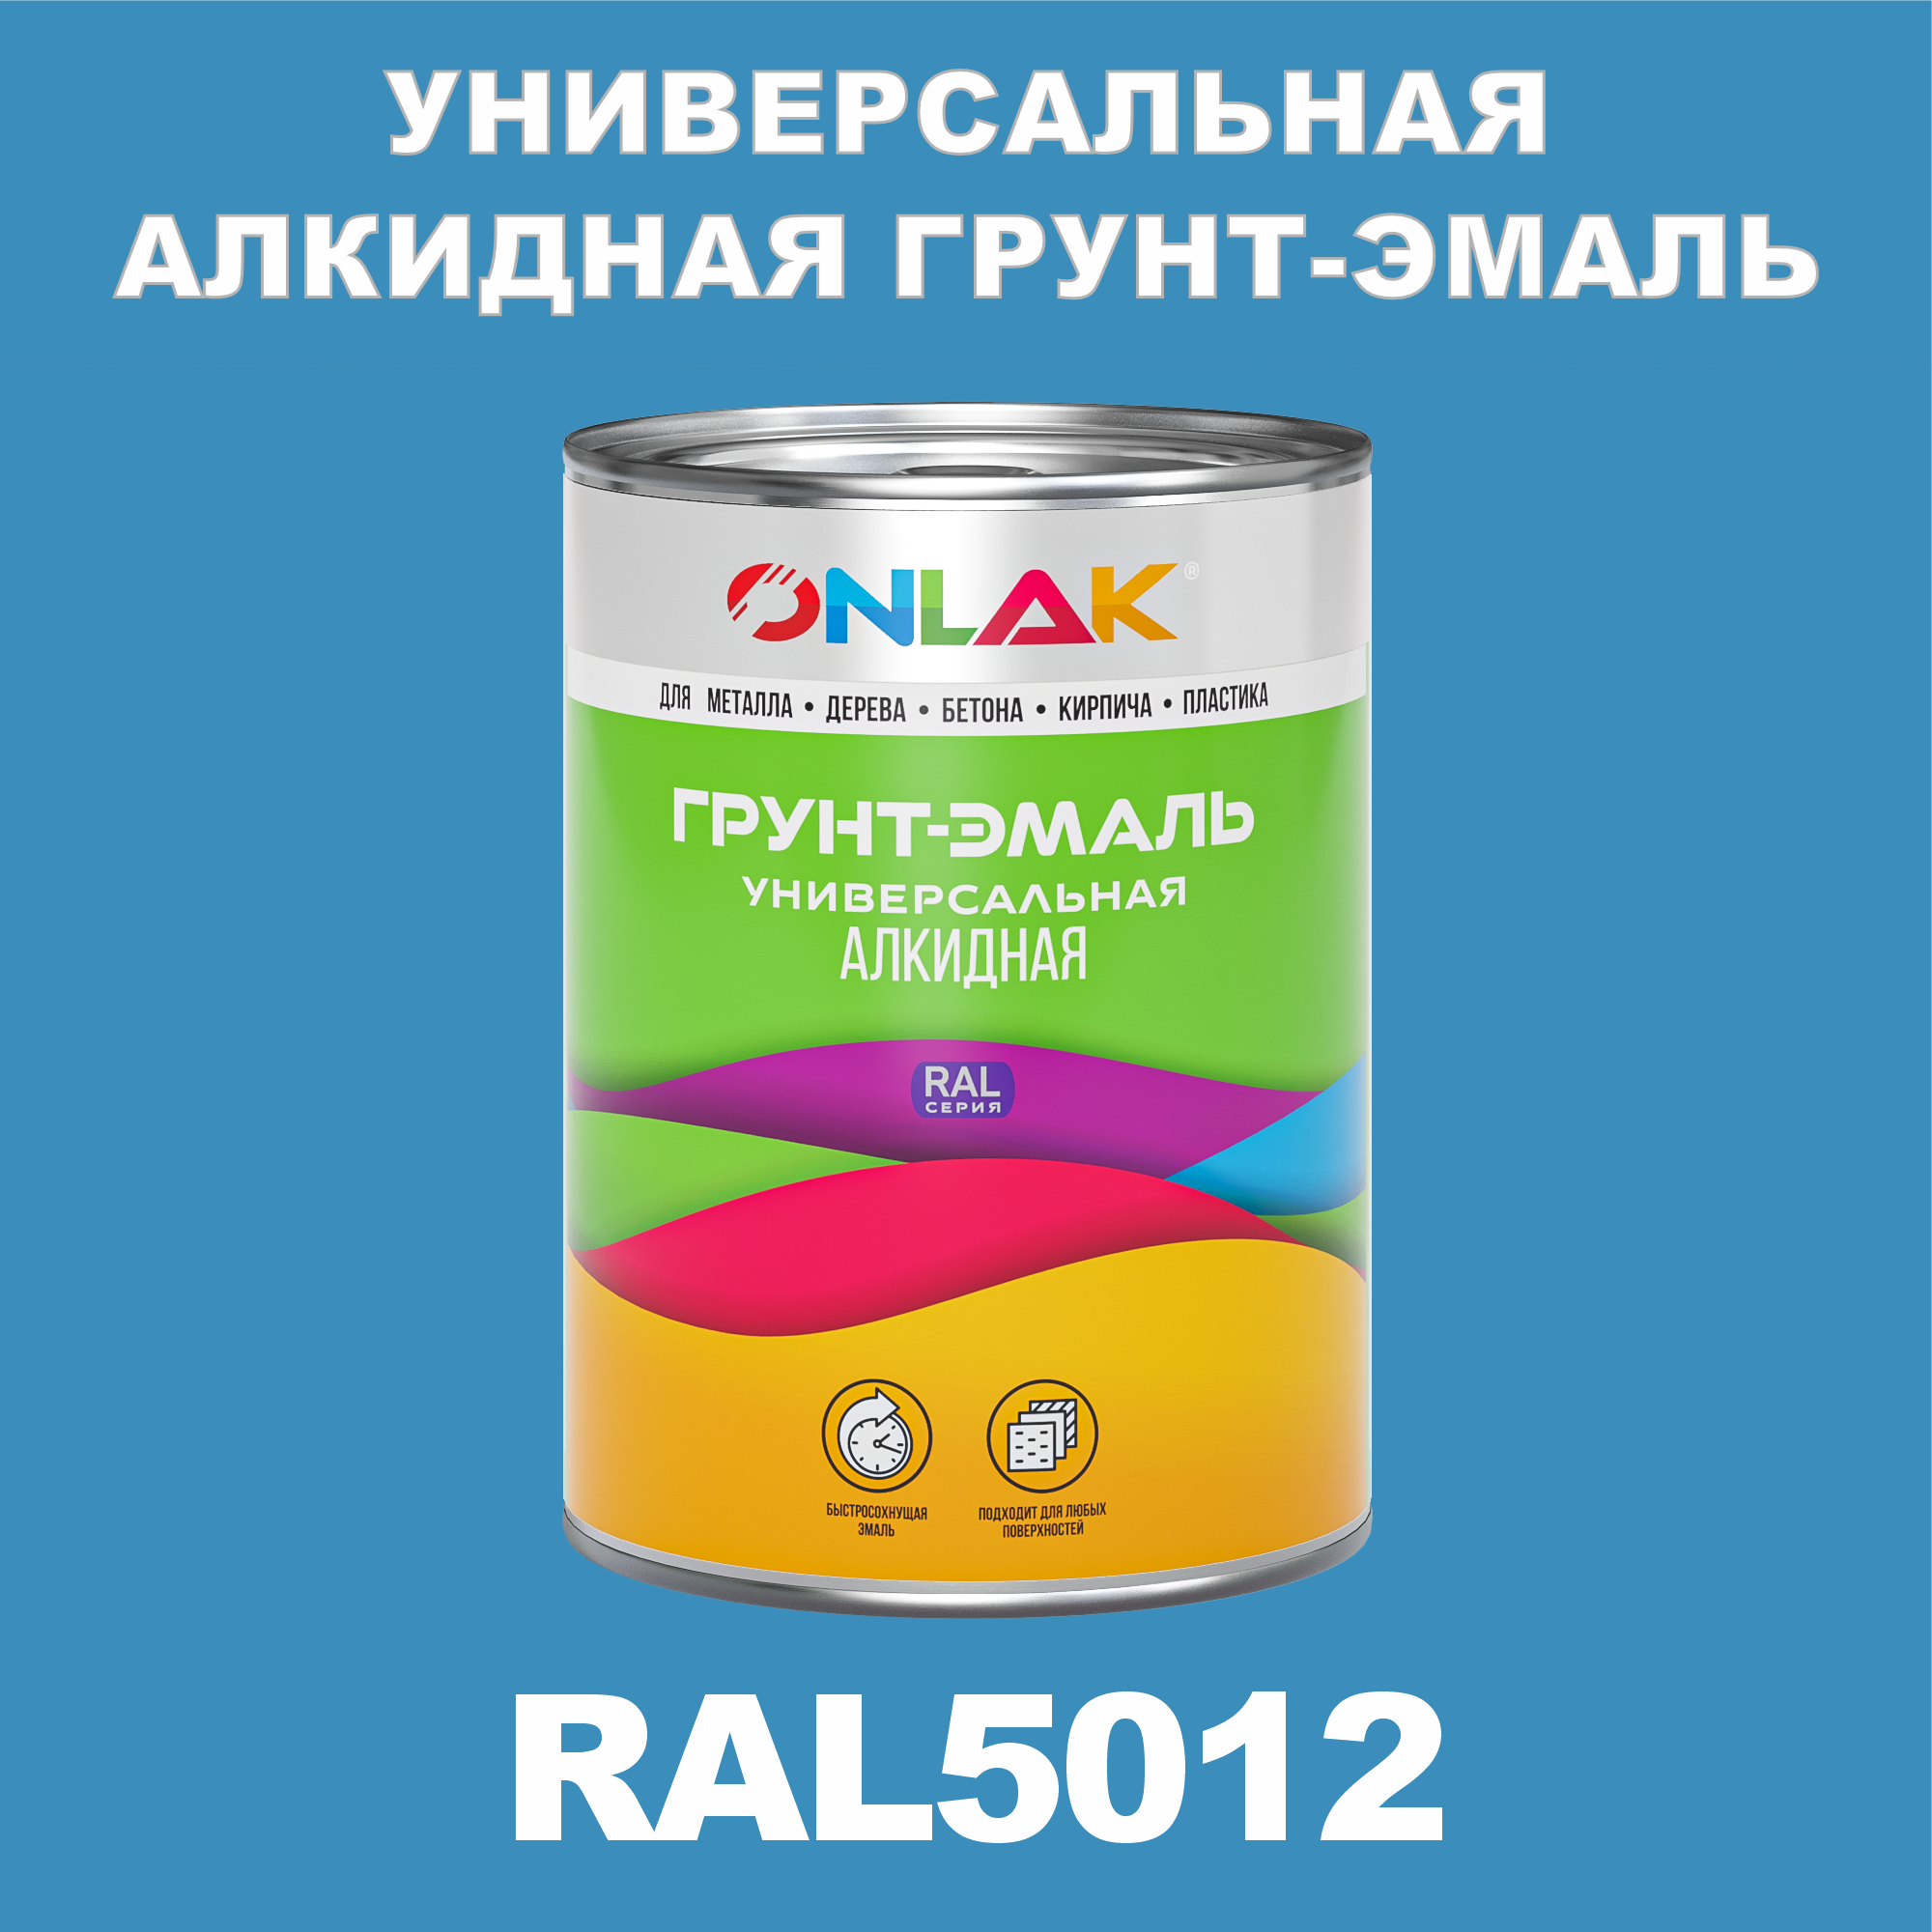 Грунт-эмаль ONLAK 1К RAL5012 антикоррозионная алкидная по металлу по ржавчине 1 кг